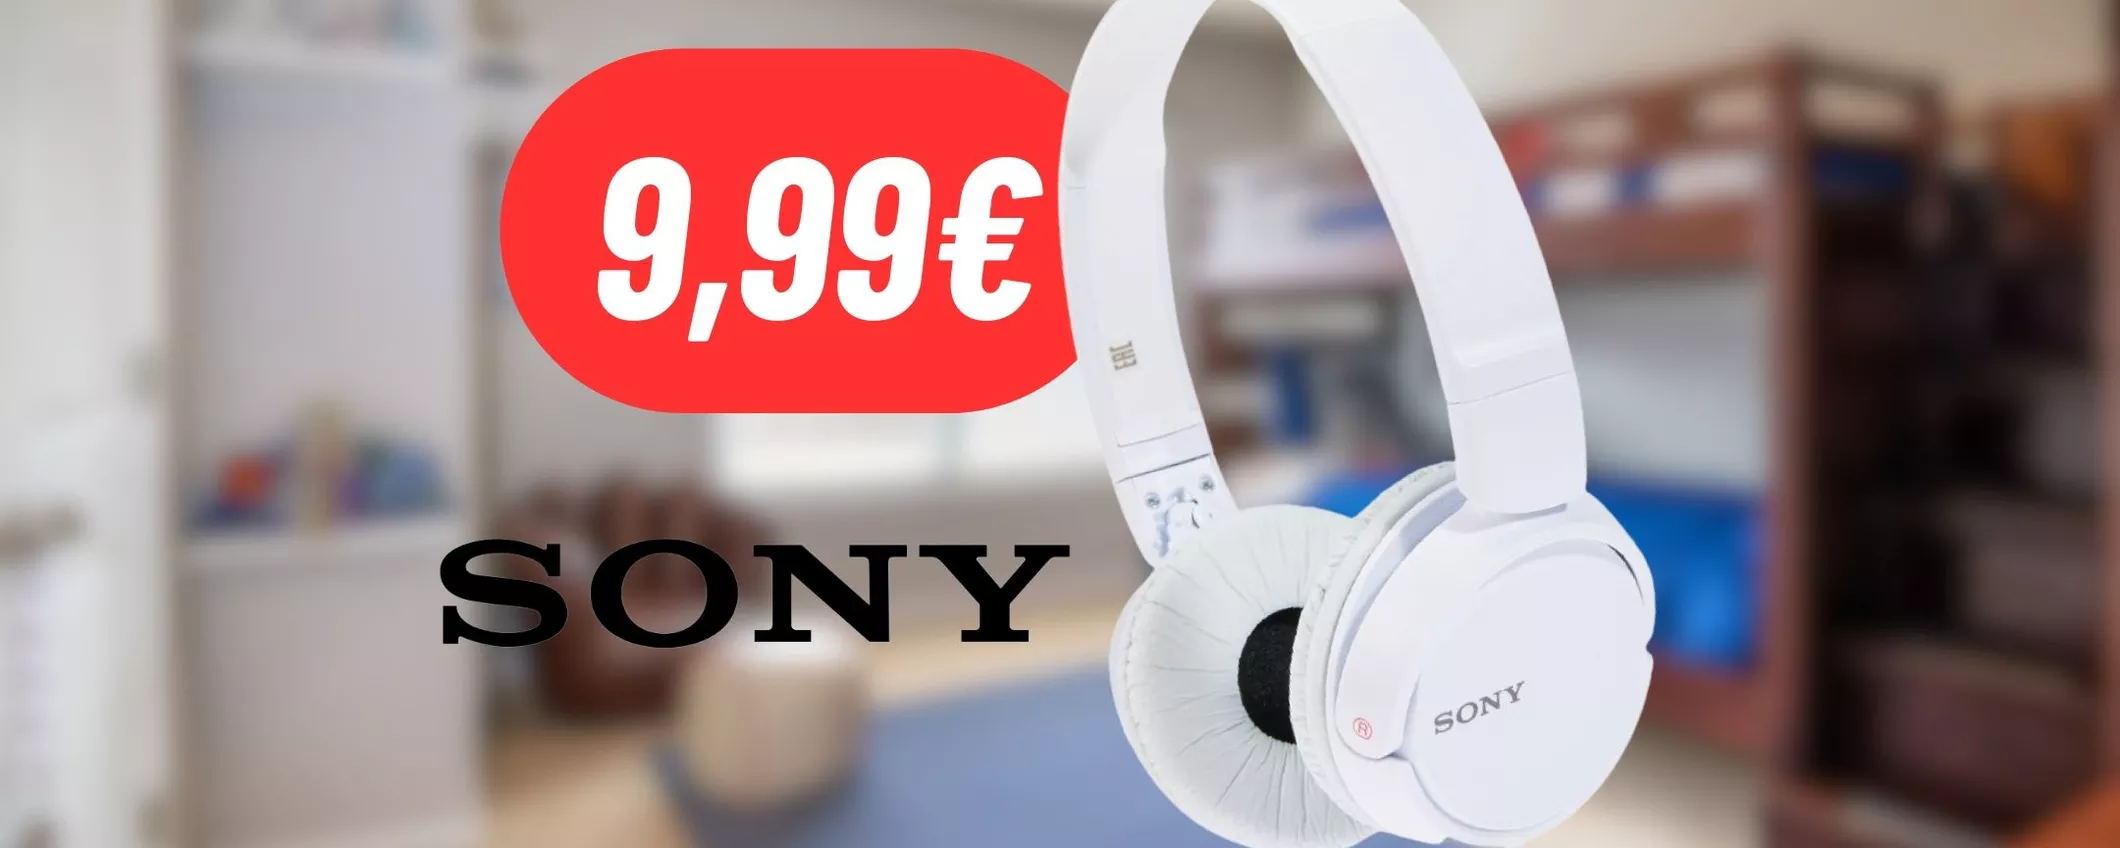 Queste cuffie Sony sono ottime e costano solo 9,99€ con la PROMO Amazon